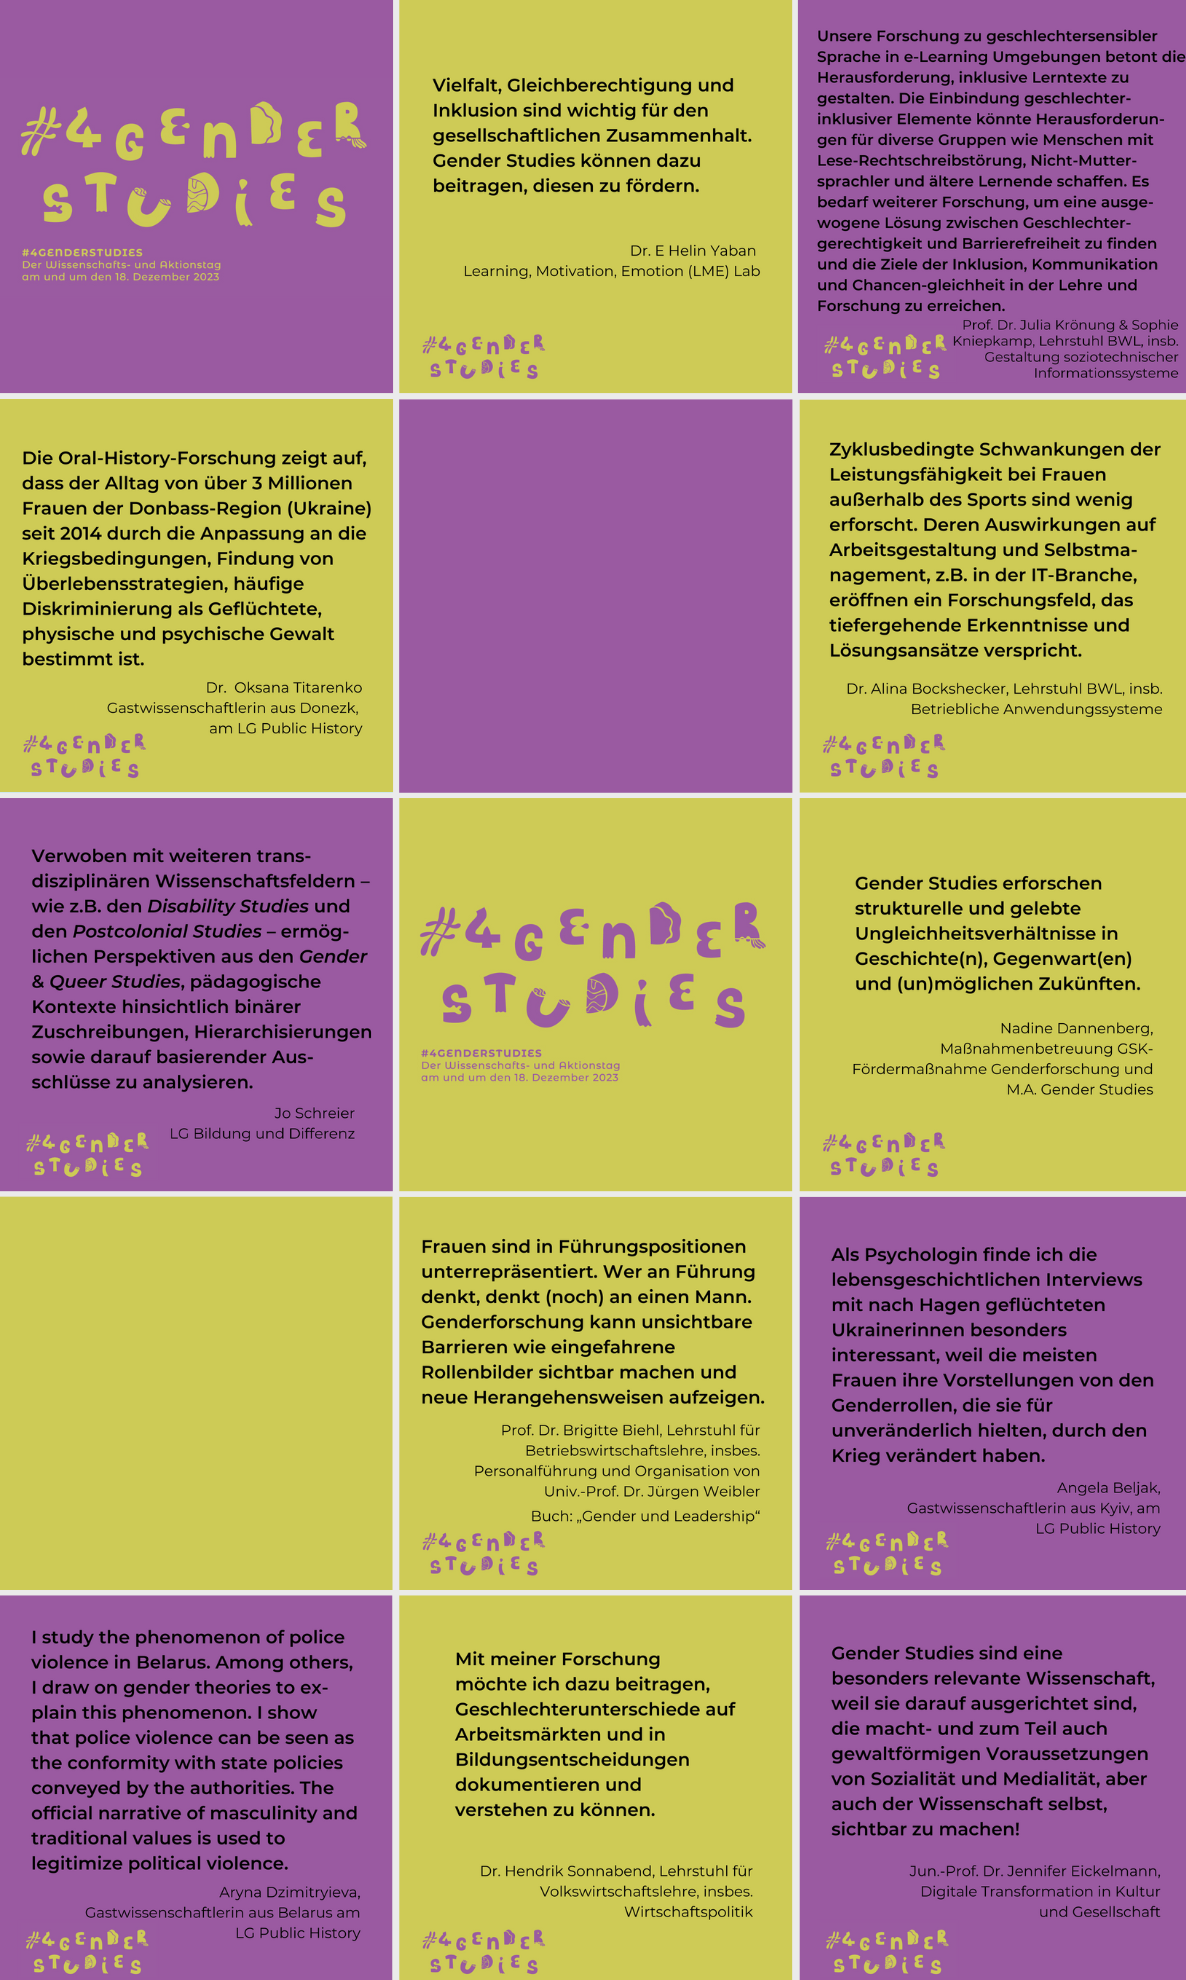 Collage 1 mit Statements der Forschenden und Lehrenden der FernUniversität in Hagen. Die Statements sind nach Fakultäten geordnet nach Collage 2 als Text hinterlegt.